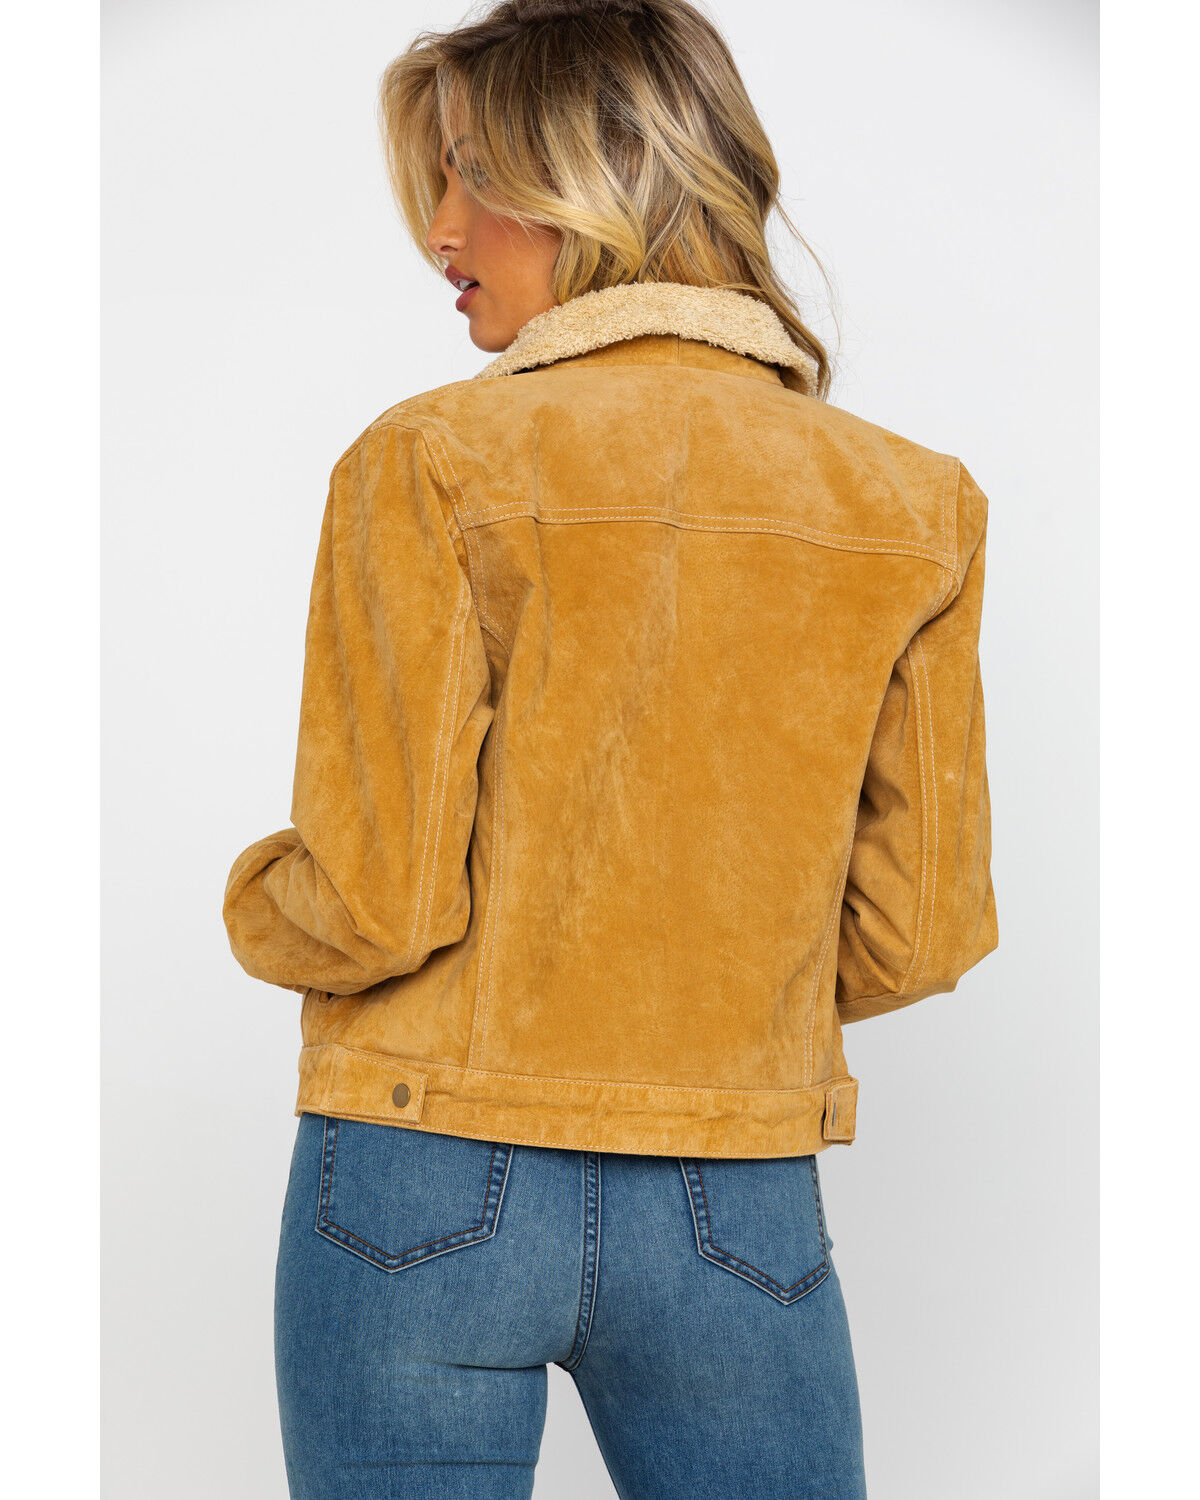 rust jean jacket